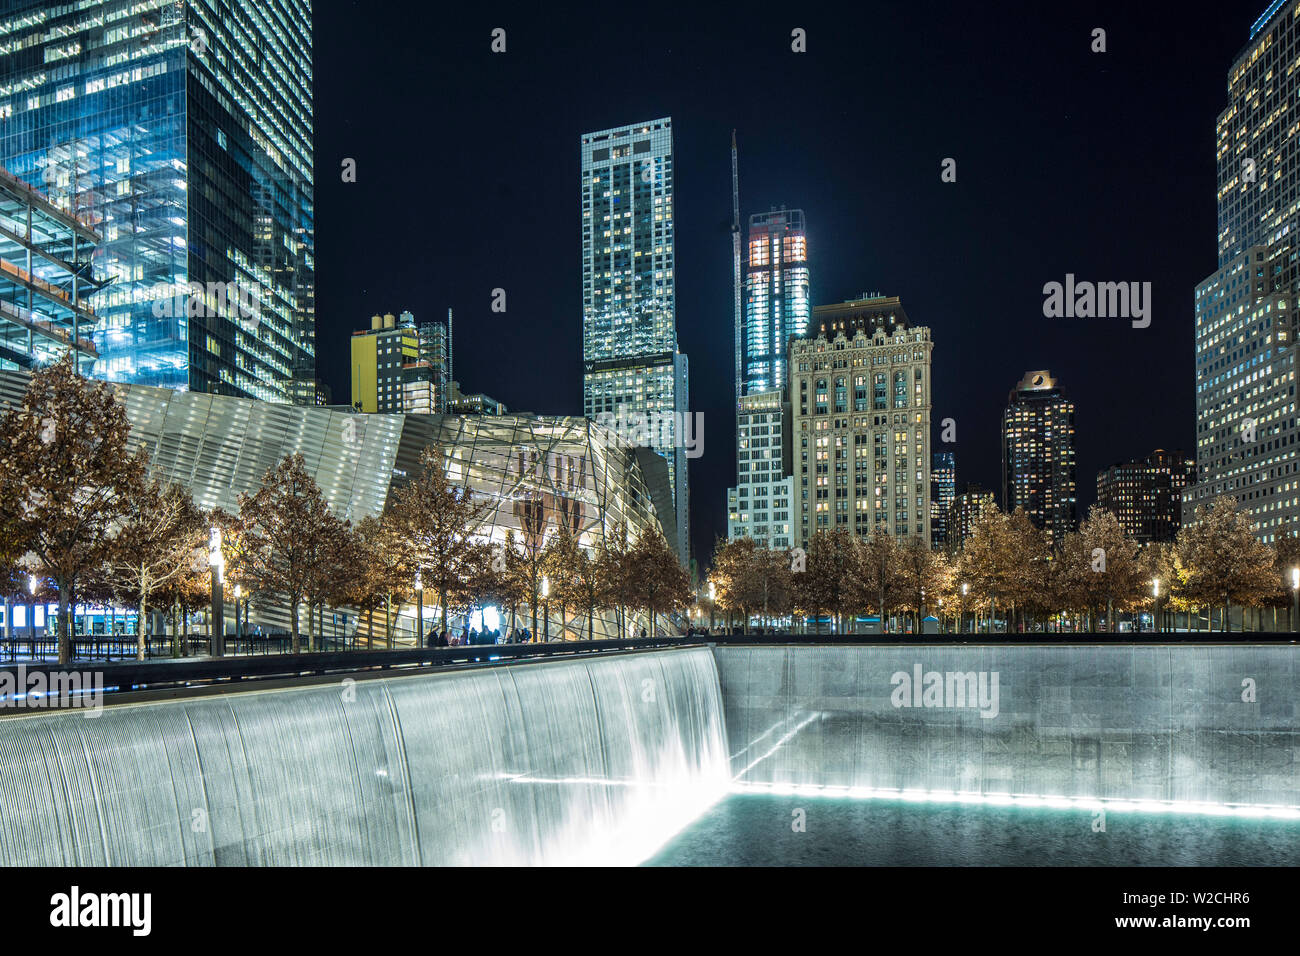 911 Memorial, Ground Zero, Lower Manhattan, New York City, New York, USA Stock Photo